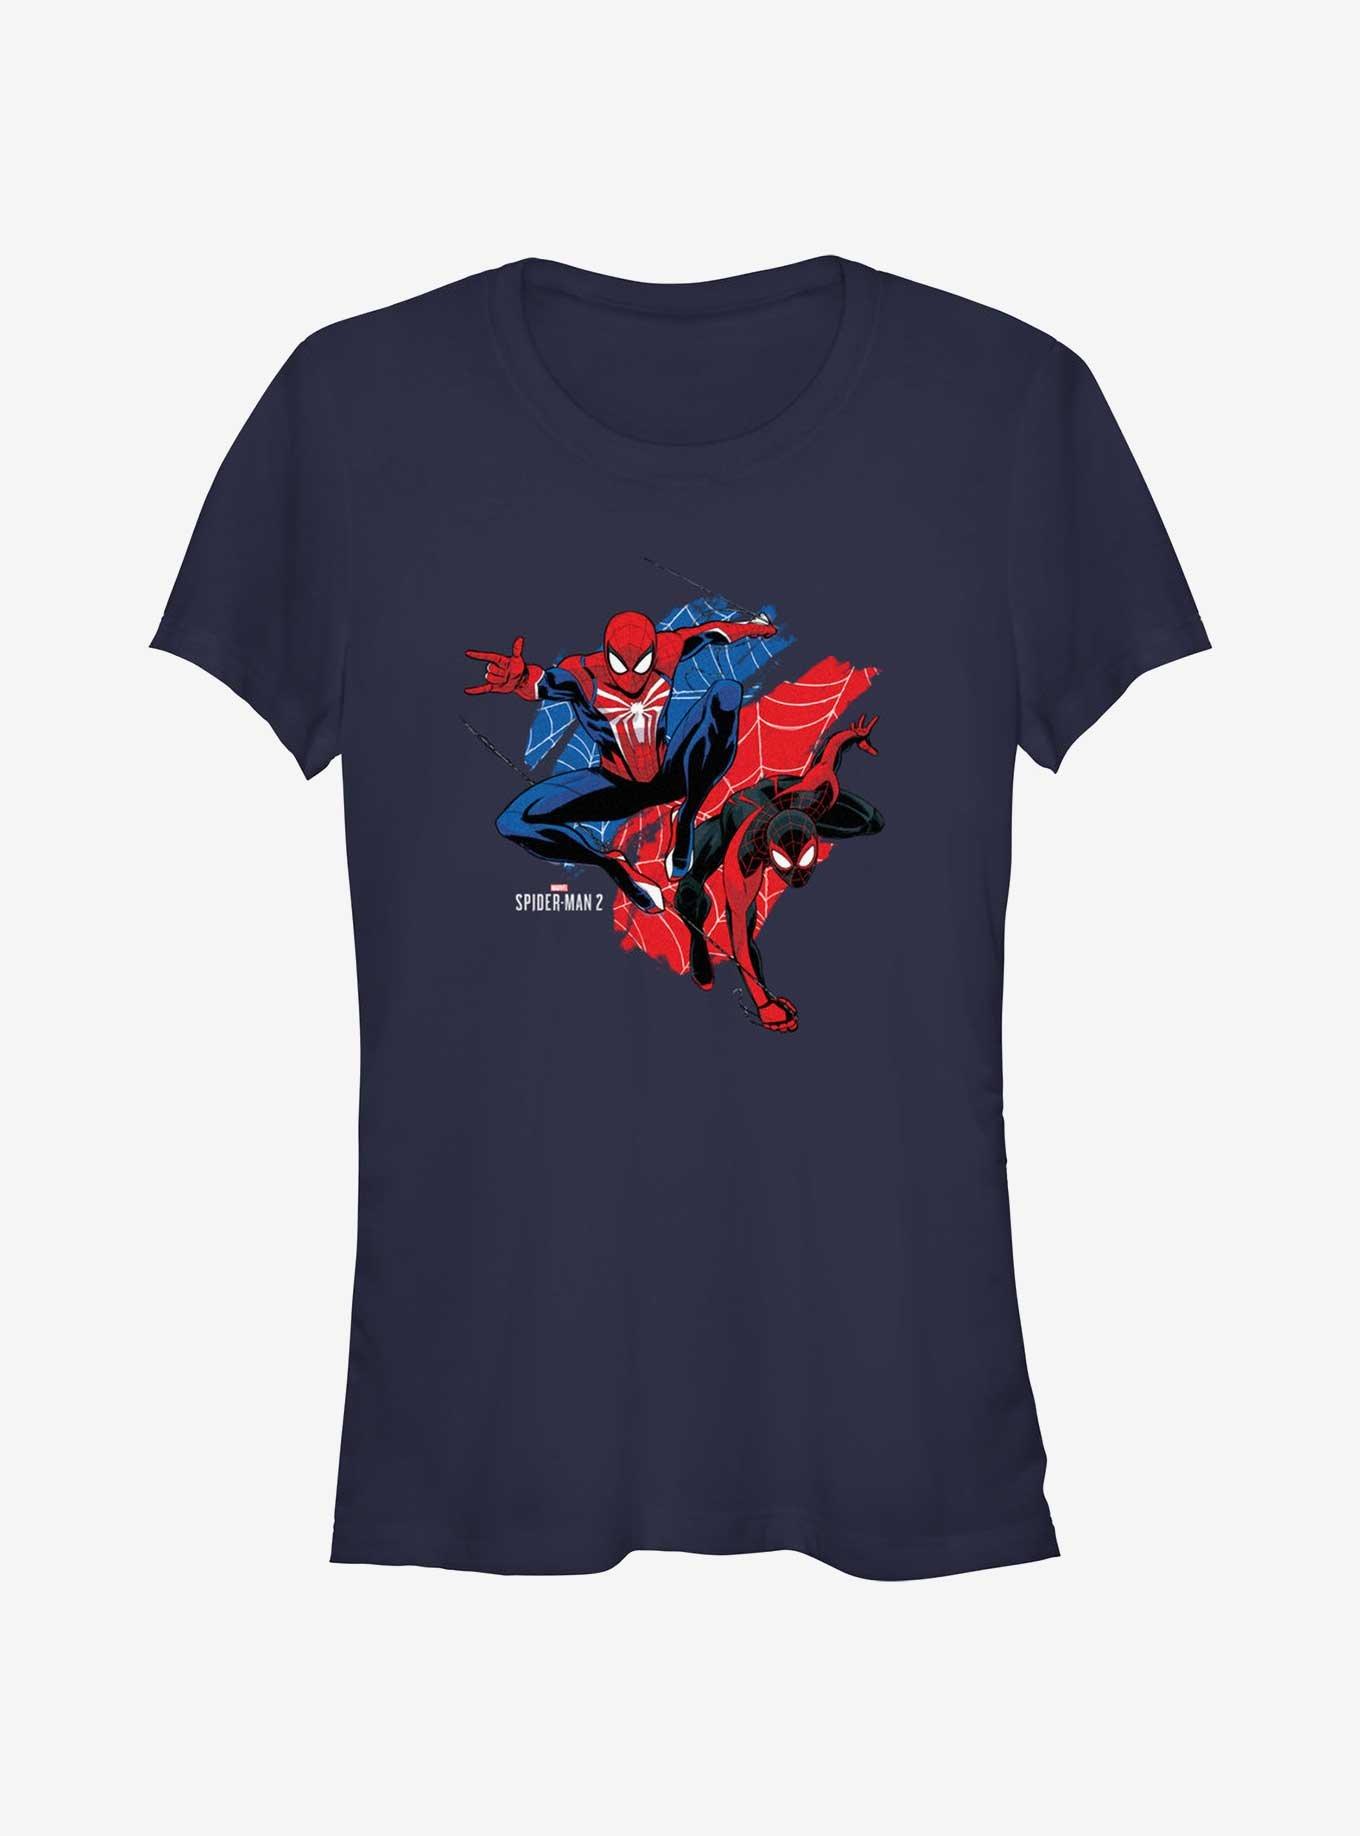 Marvel Spider-Man 2 Game Peter Parker & Miles Morales Girls T-Shirt